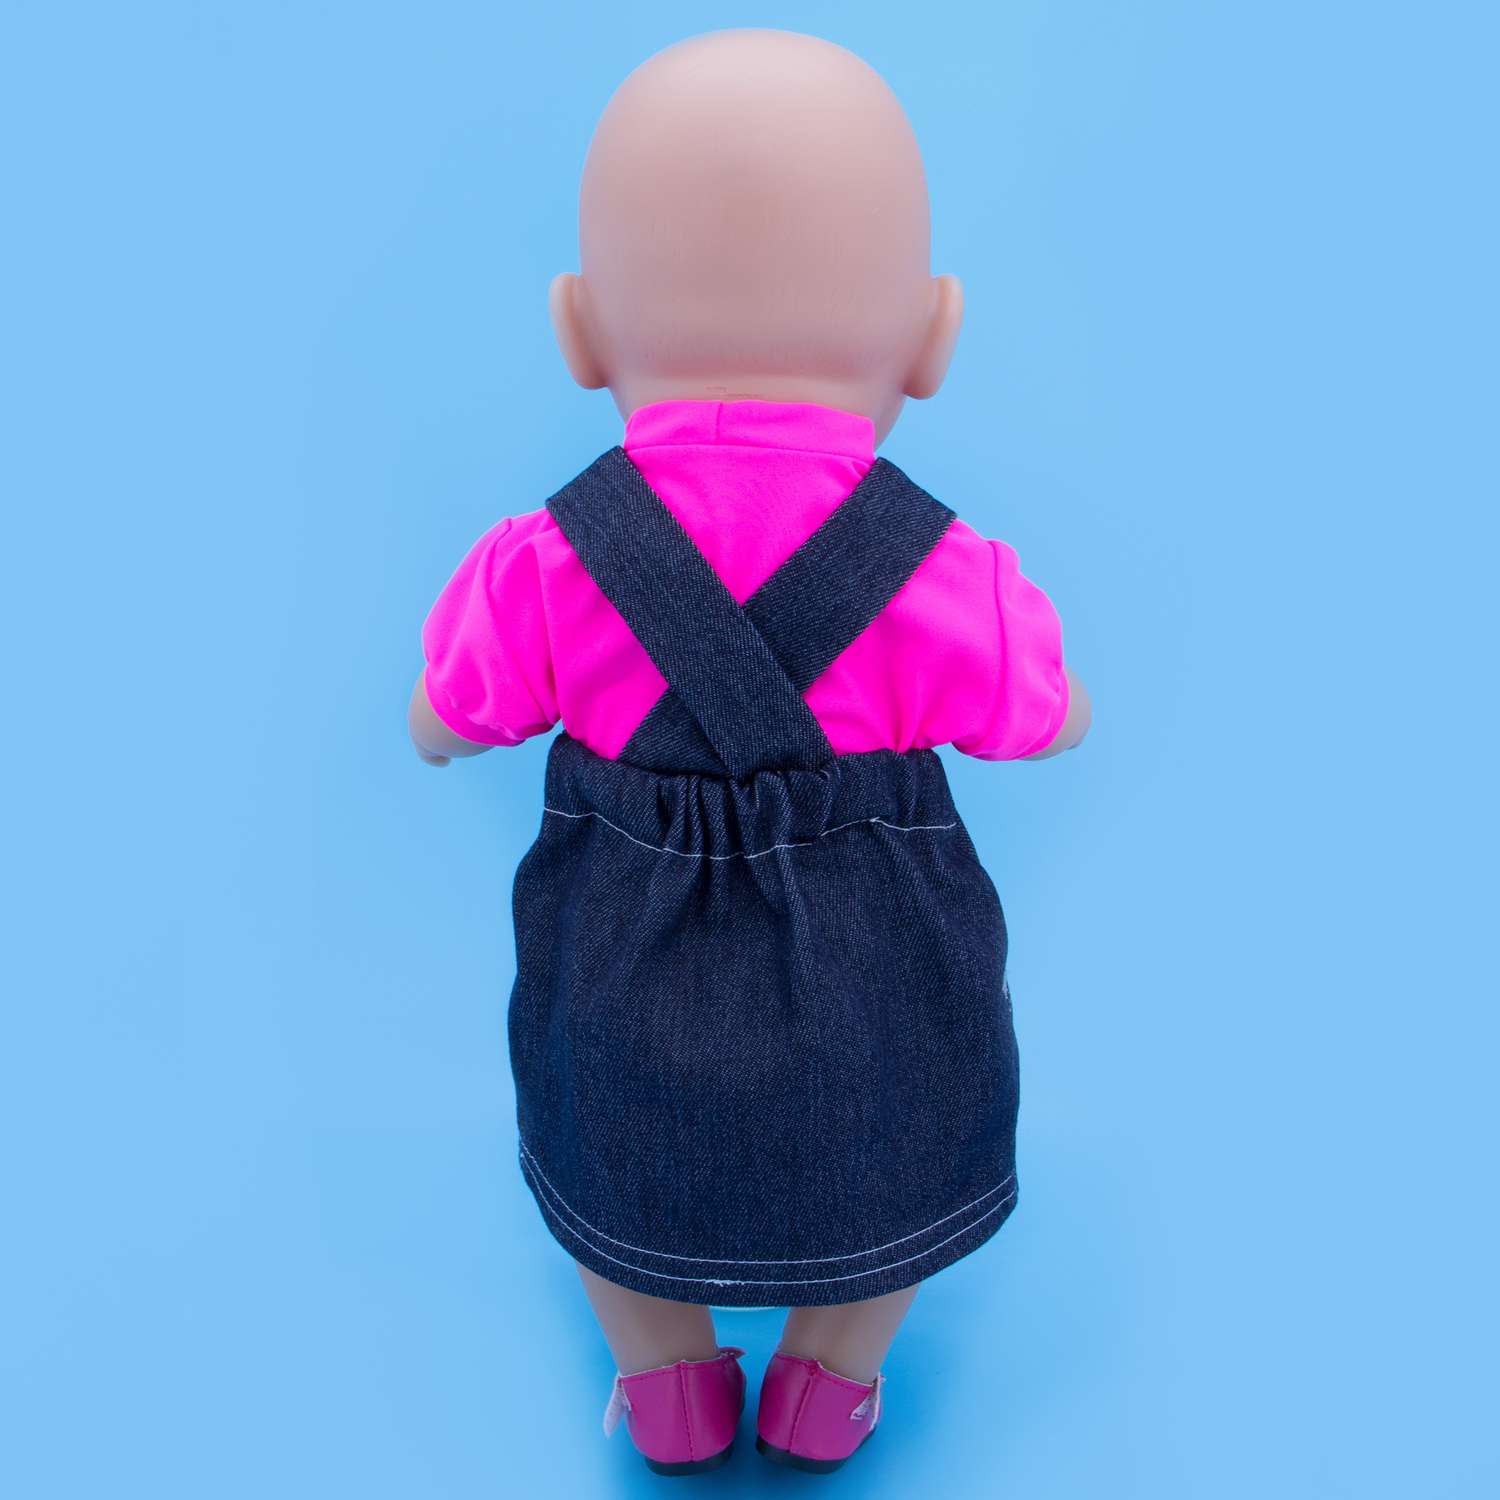 Джинсовый набор Модница для пупса 43-48 см синий-розовый 6111синий&amp;розовый - фото 15